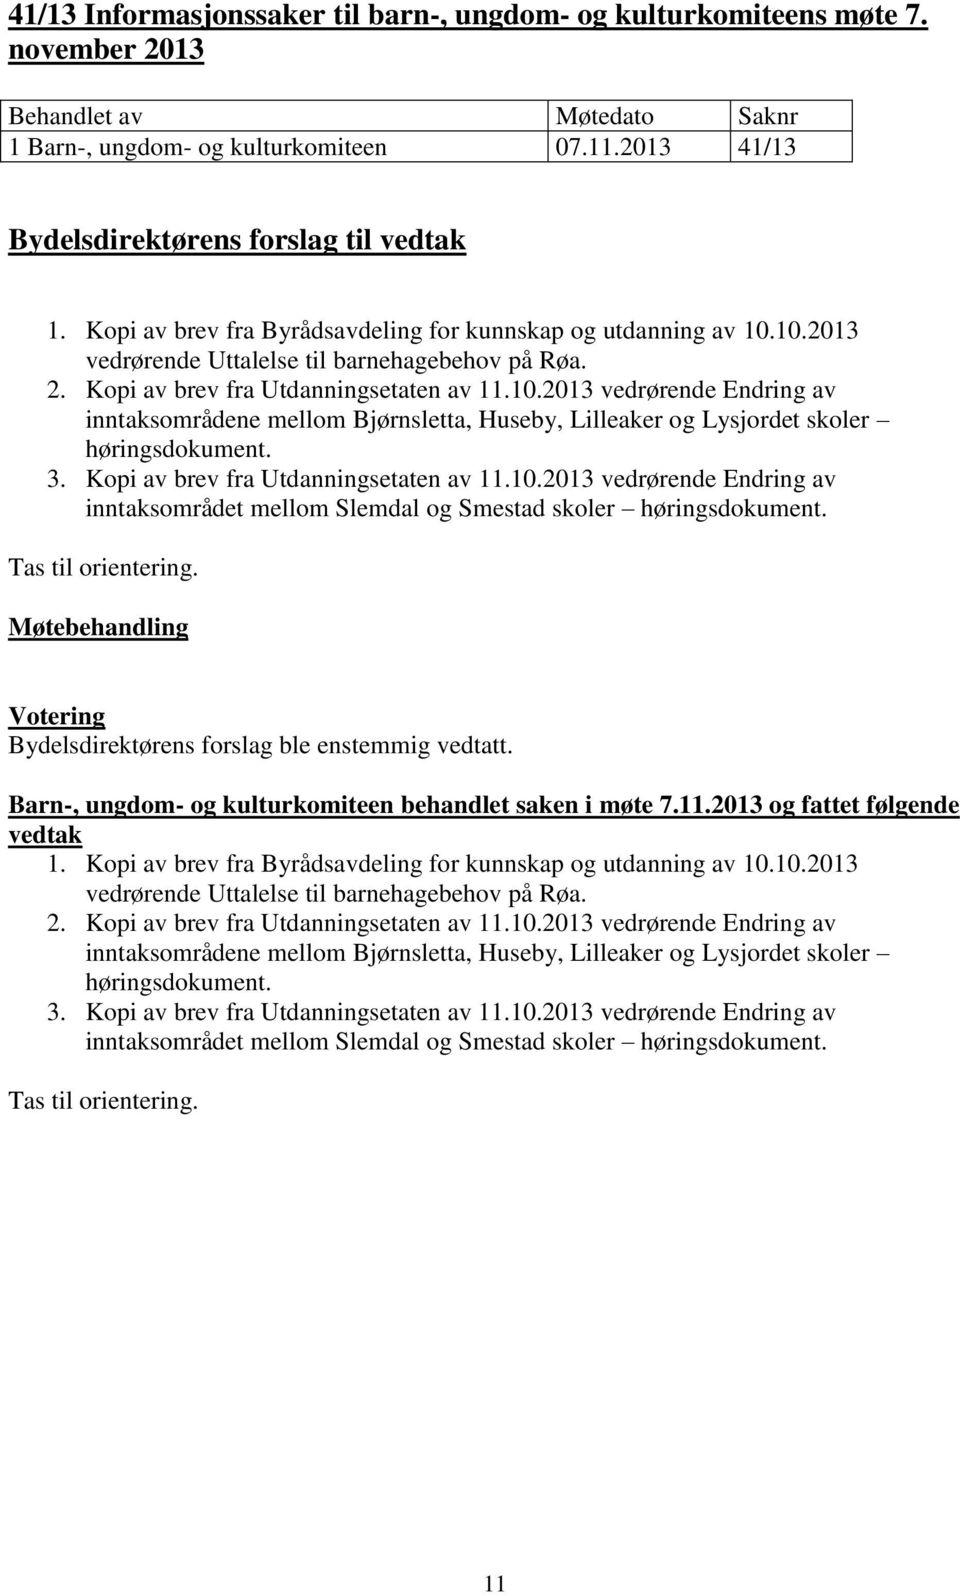 3. Kopi av brev fra Utdanningsetaten av 11.10.2013 vedrørende Endring av inntaksområdet mellom Slemdal og Smestad skoler høringsdokument. Tas til orientering.